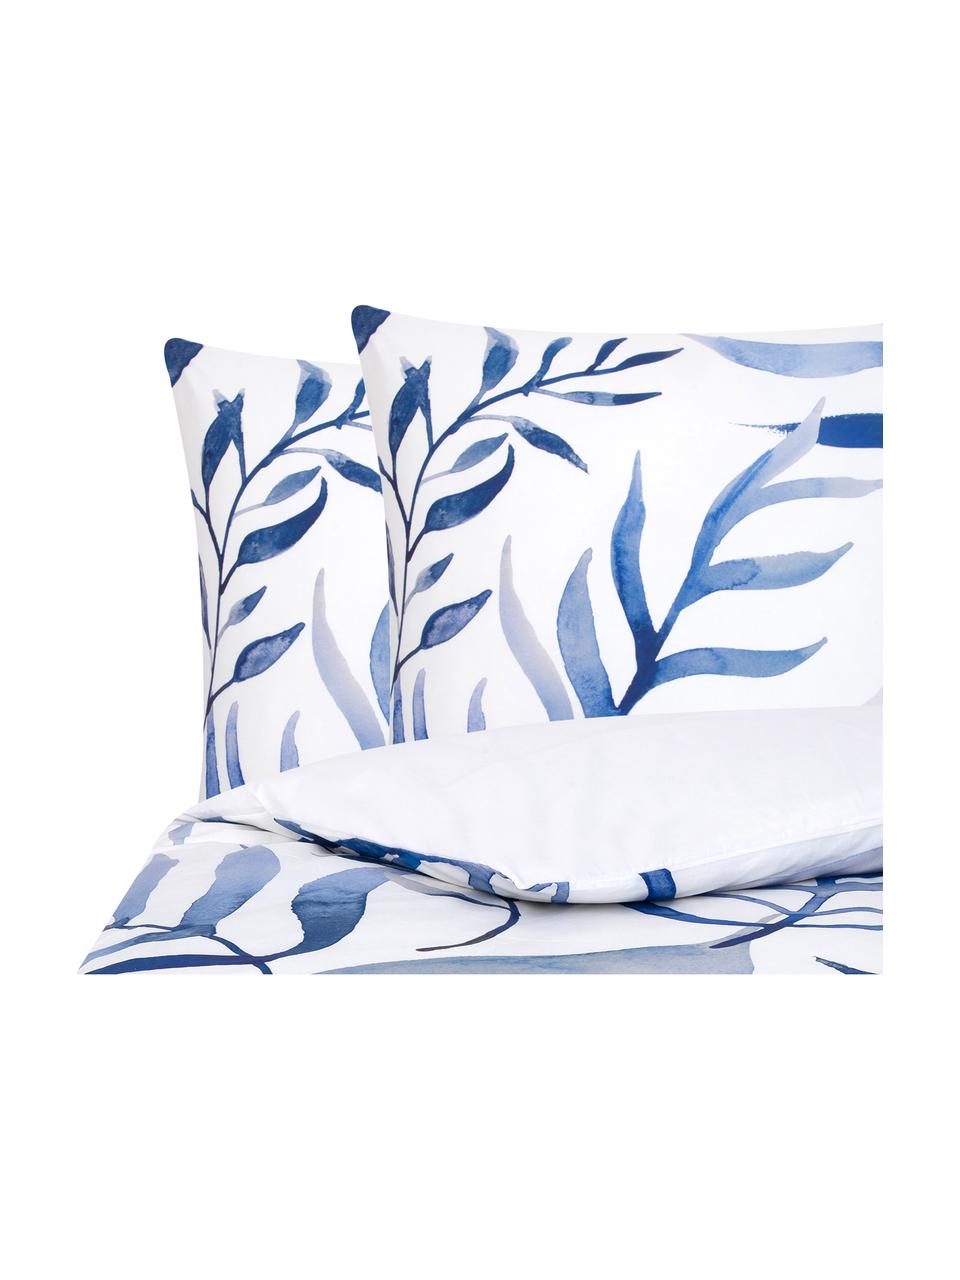 Biancheria da letto reversibile in percalle Francine, Tessuto: percalle, Bianco, blu, 200 x 200 cm + 2 federe 50 x 80 cm